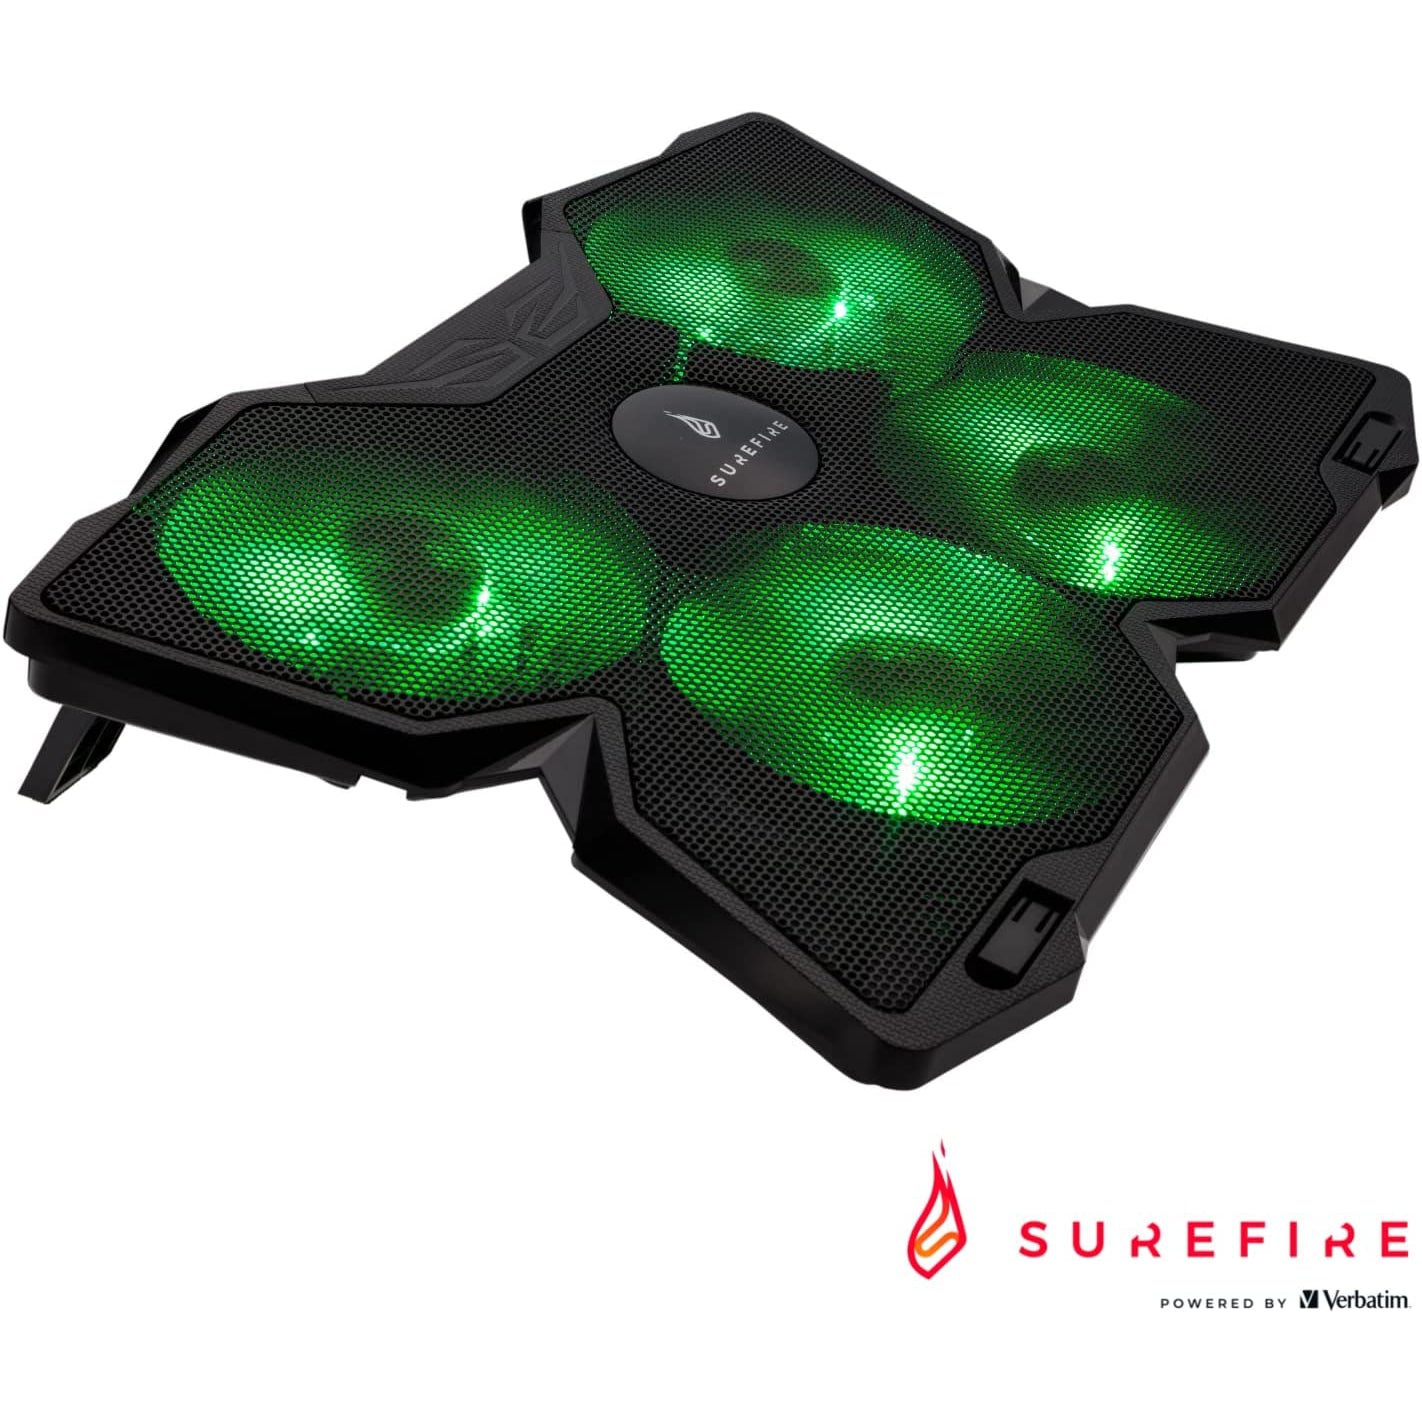 SureFire Bora Gaming Laptop Cooling Pad